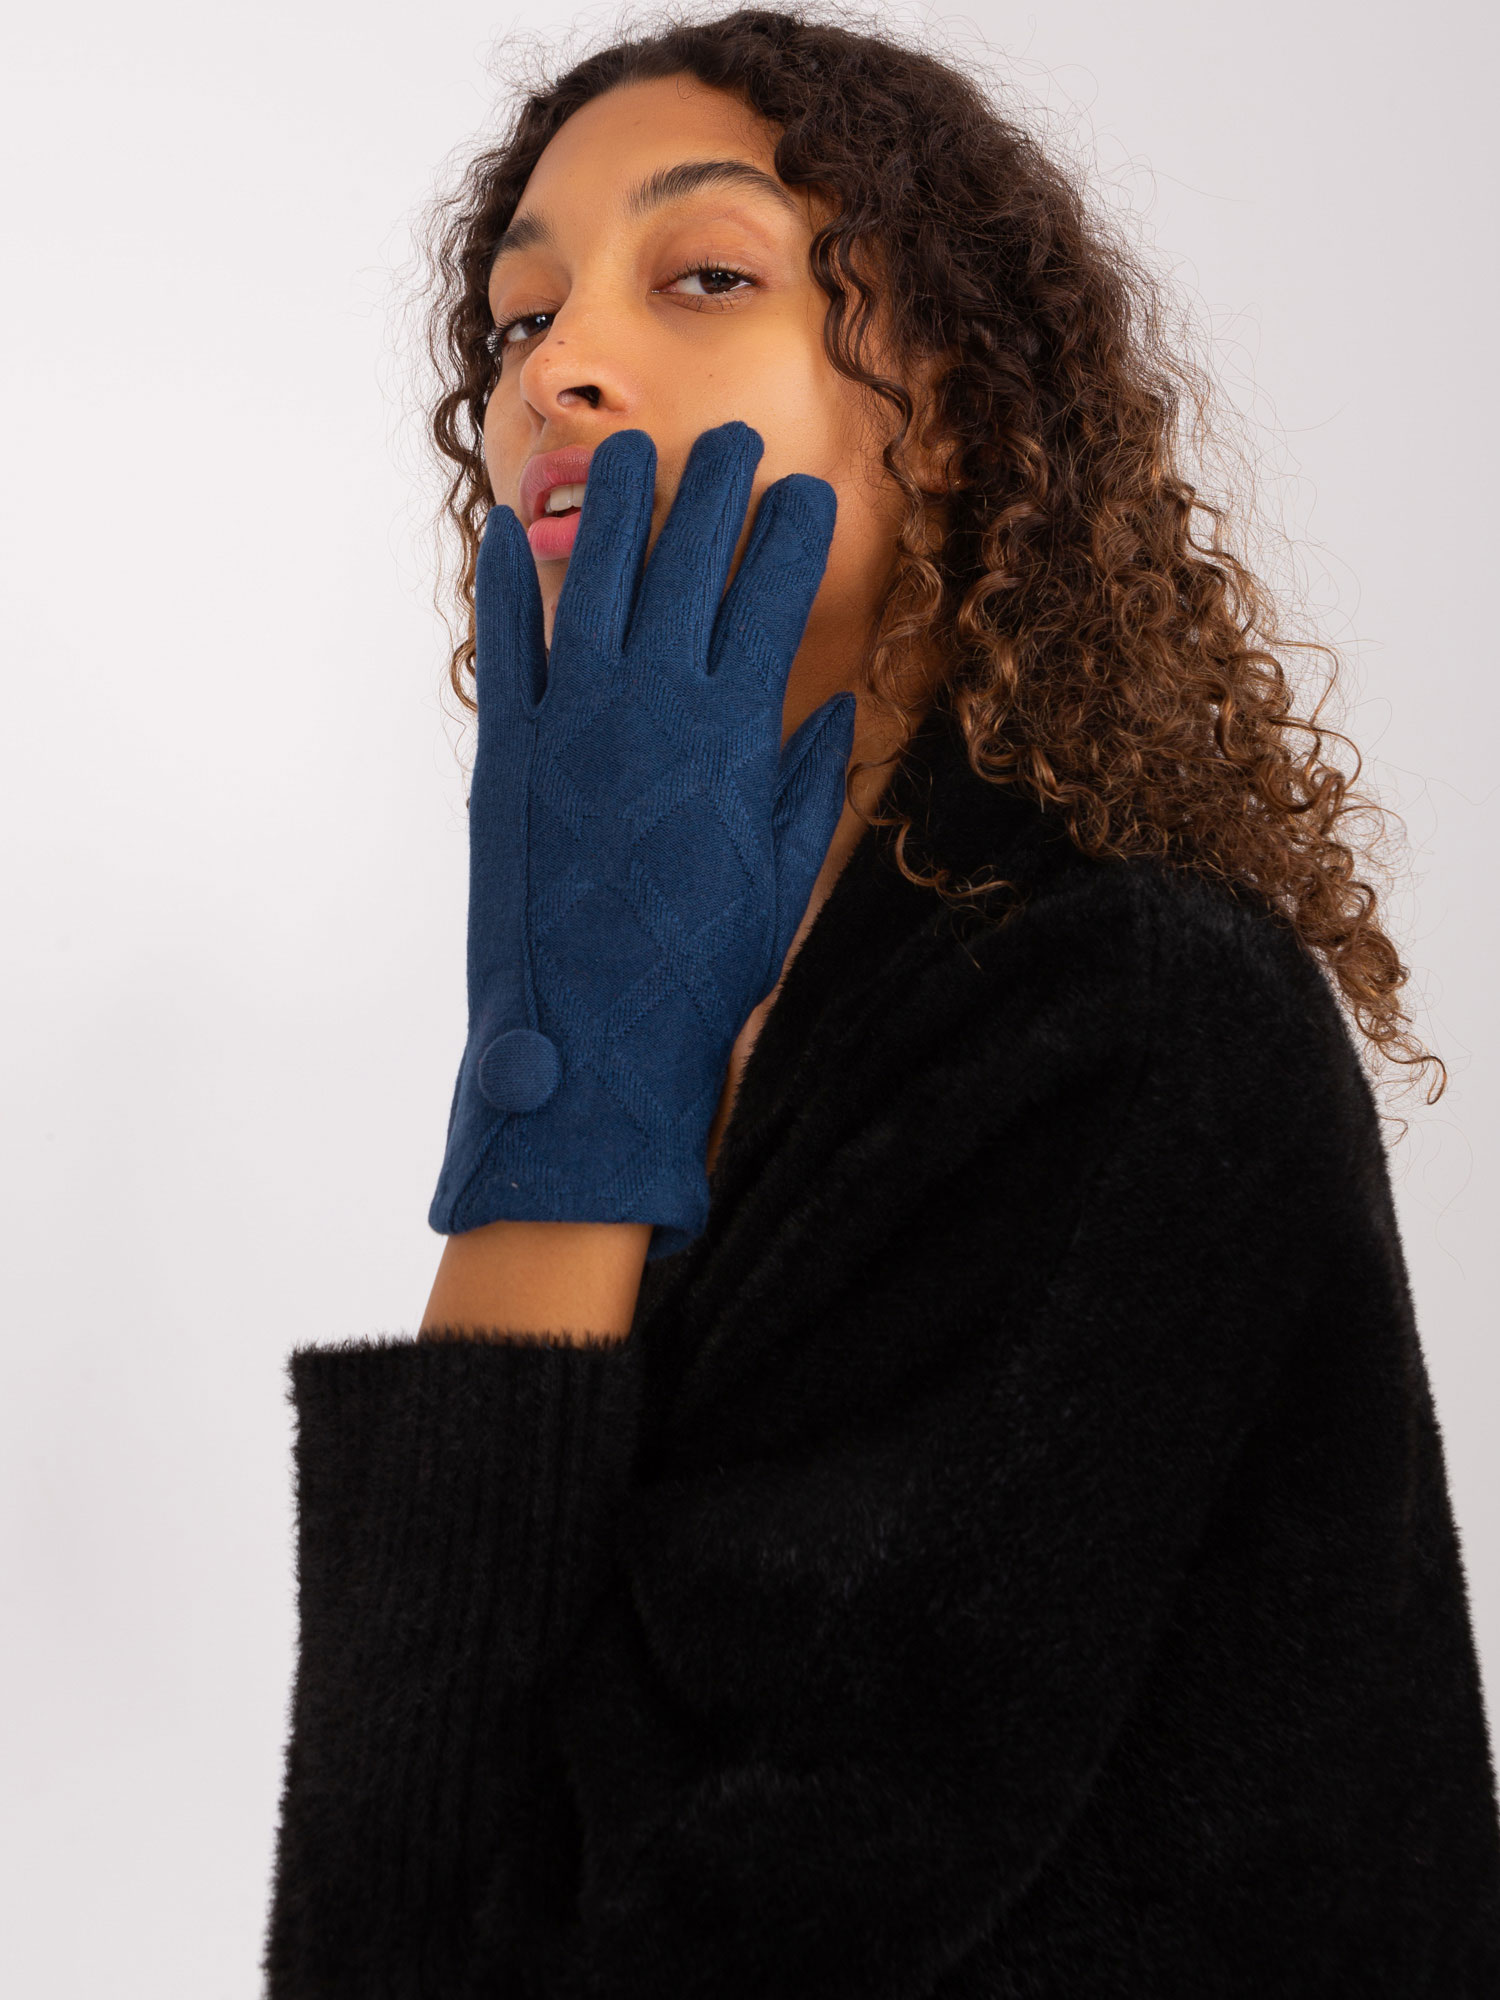 Tmavě modré rukavice s ozdobným knoflíkem -AT-RK-239501.10-sea blue Velikost: S/M